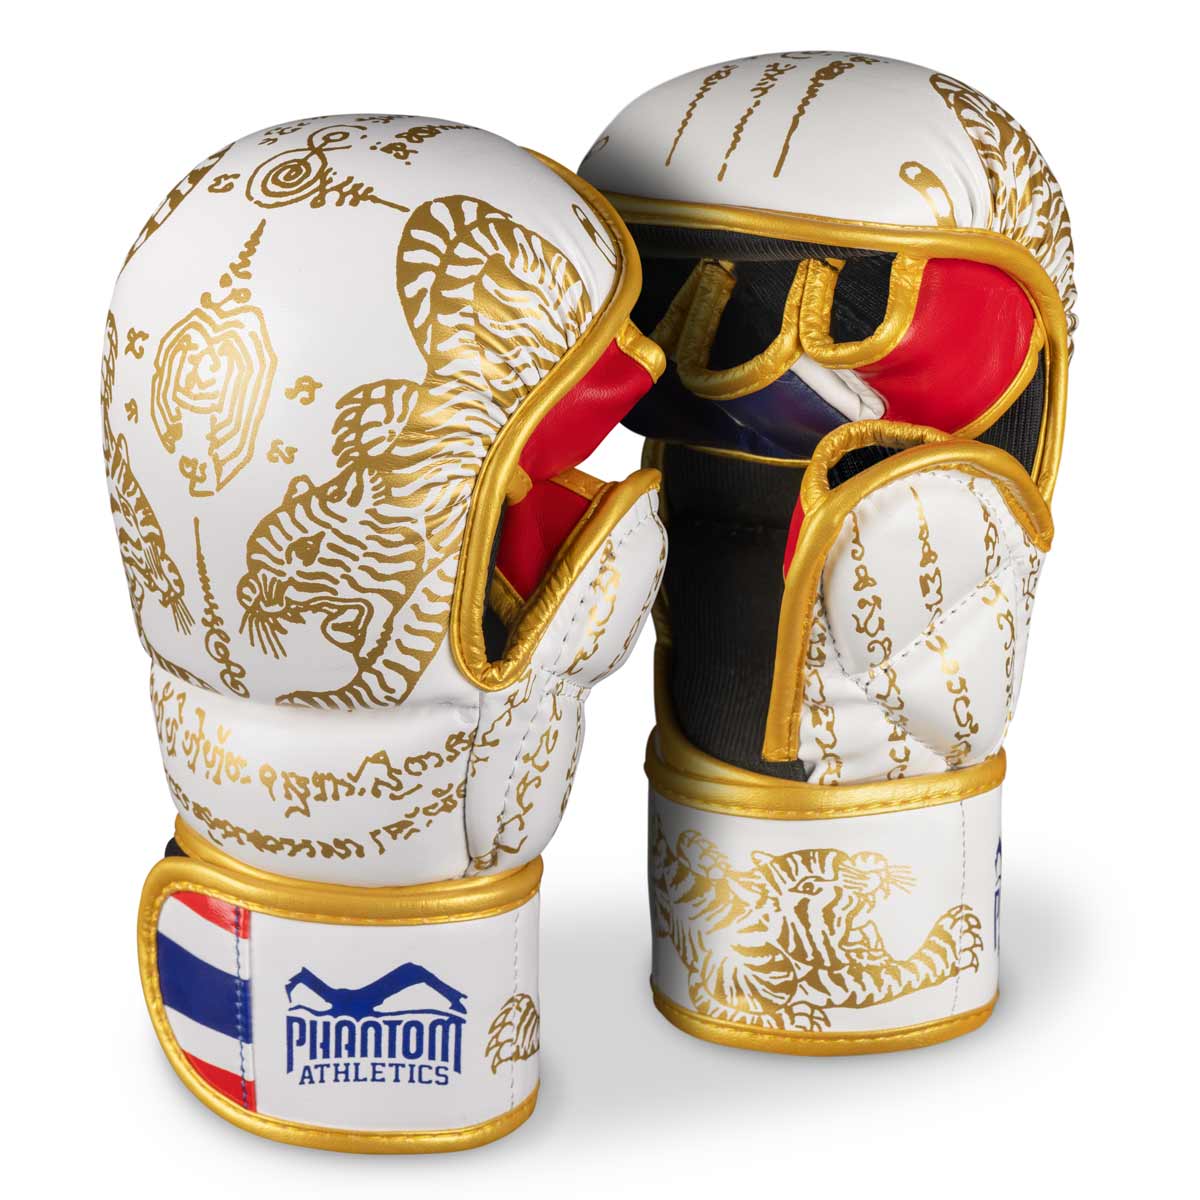 Γάντια Phantom Muay Thai για ταϊλανδέζικο μποξ και MMA sparring, αγώνες και προπόνηση. Στο παραδοσιακό σχέδιο Sak Yant και το χρώμα λευκό/χρυσό.